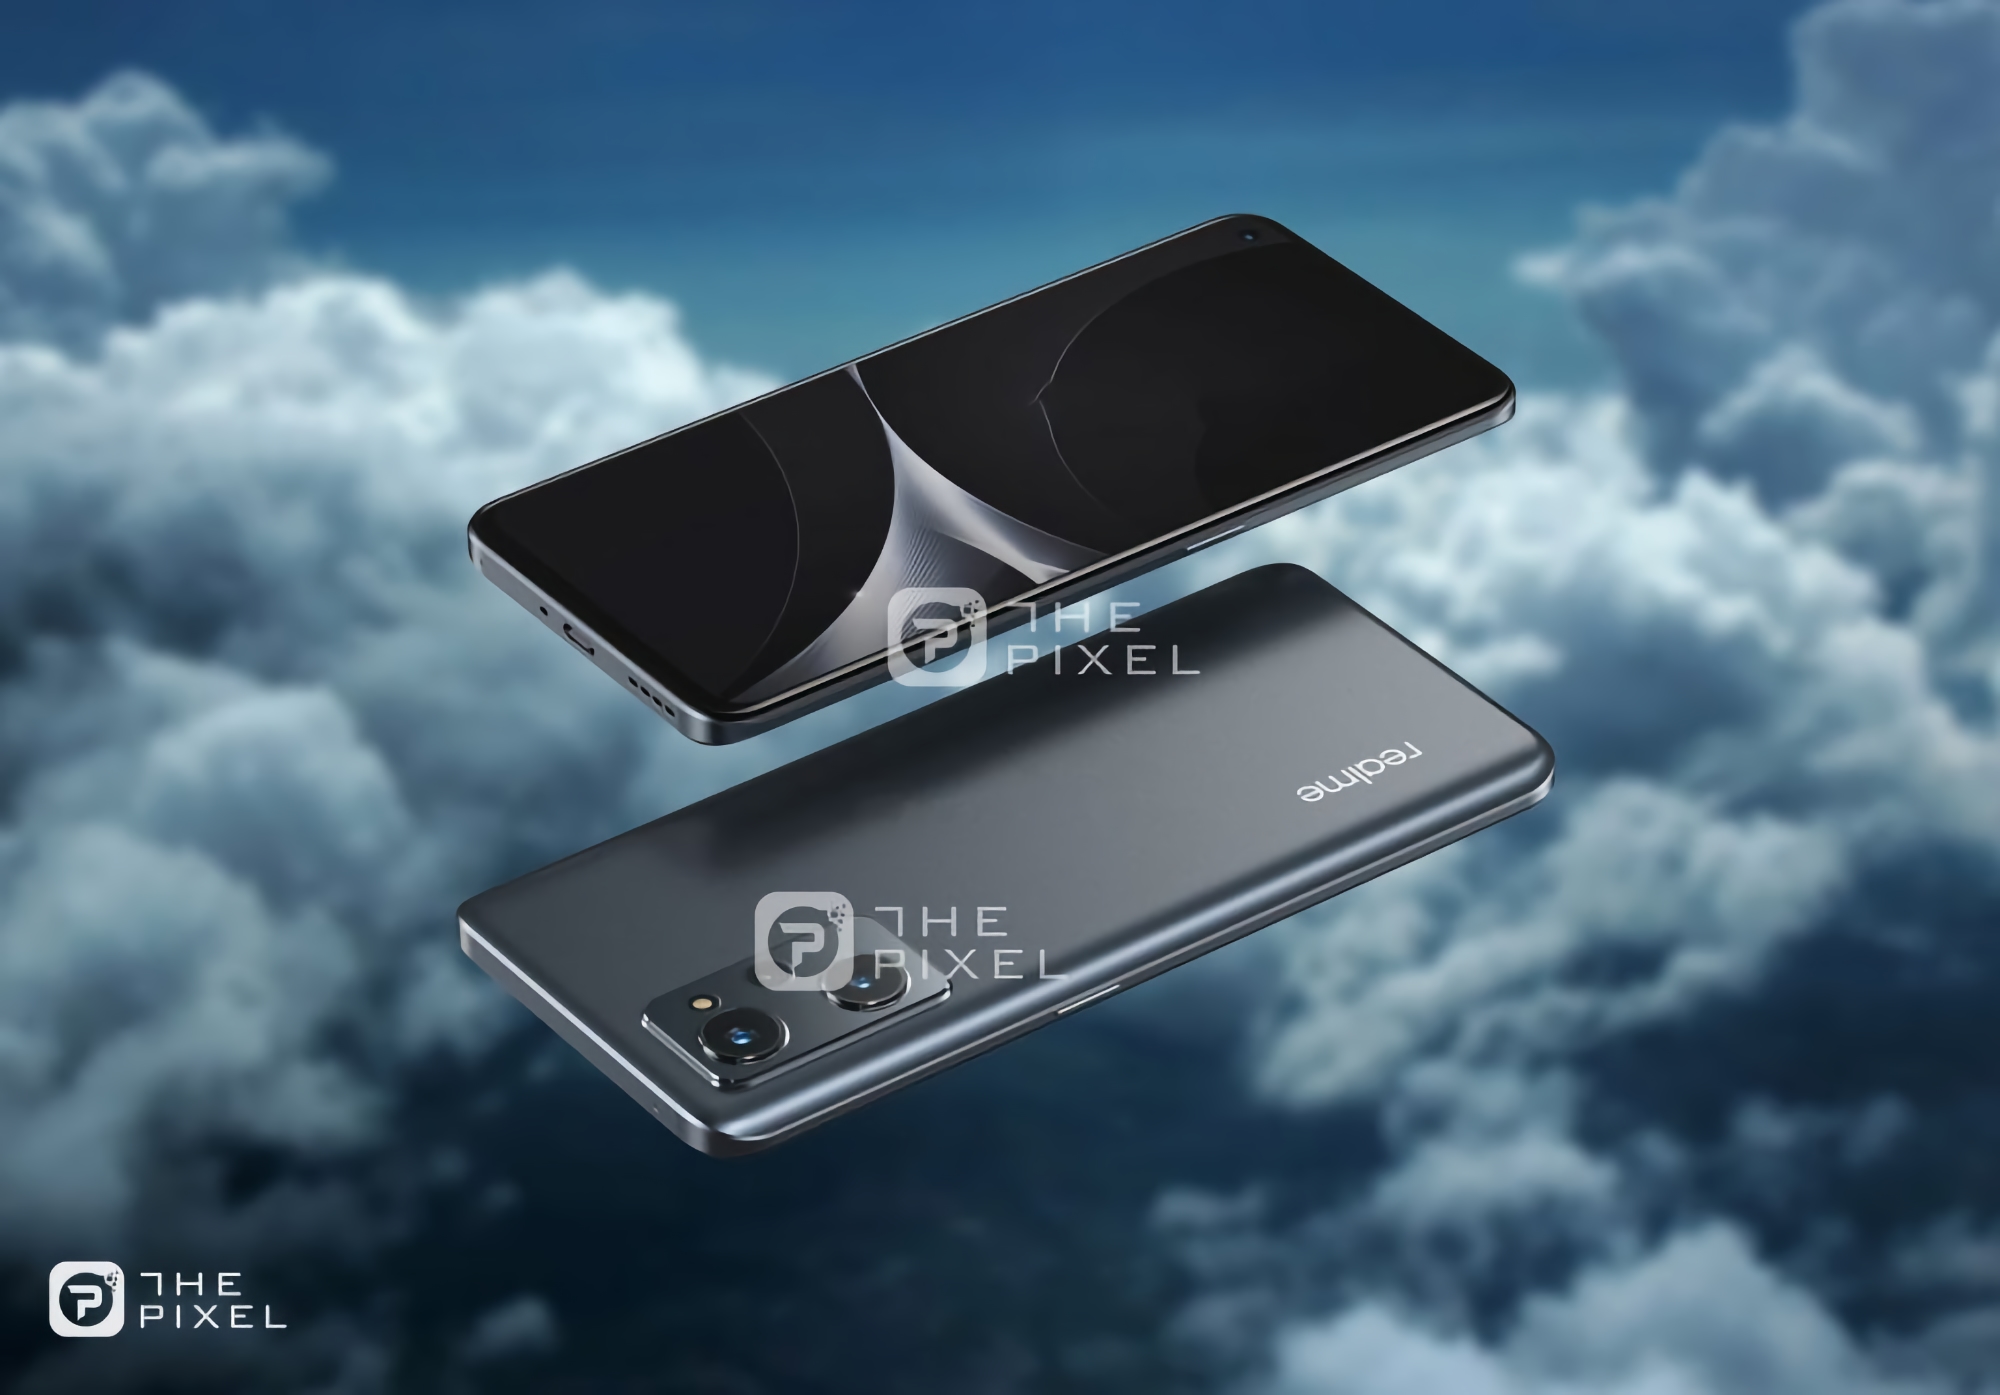 У мережі з'явилися зображення Realme 9i, апарат буде схожий на OnePlus Nord 2 та Realme GT Neo 2